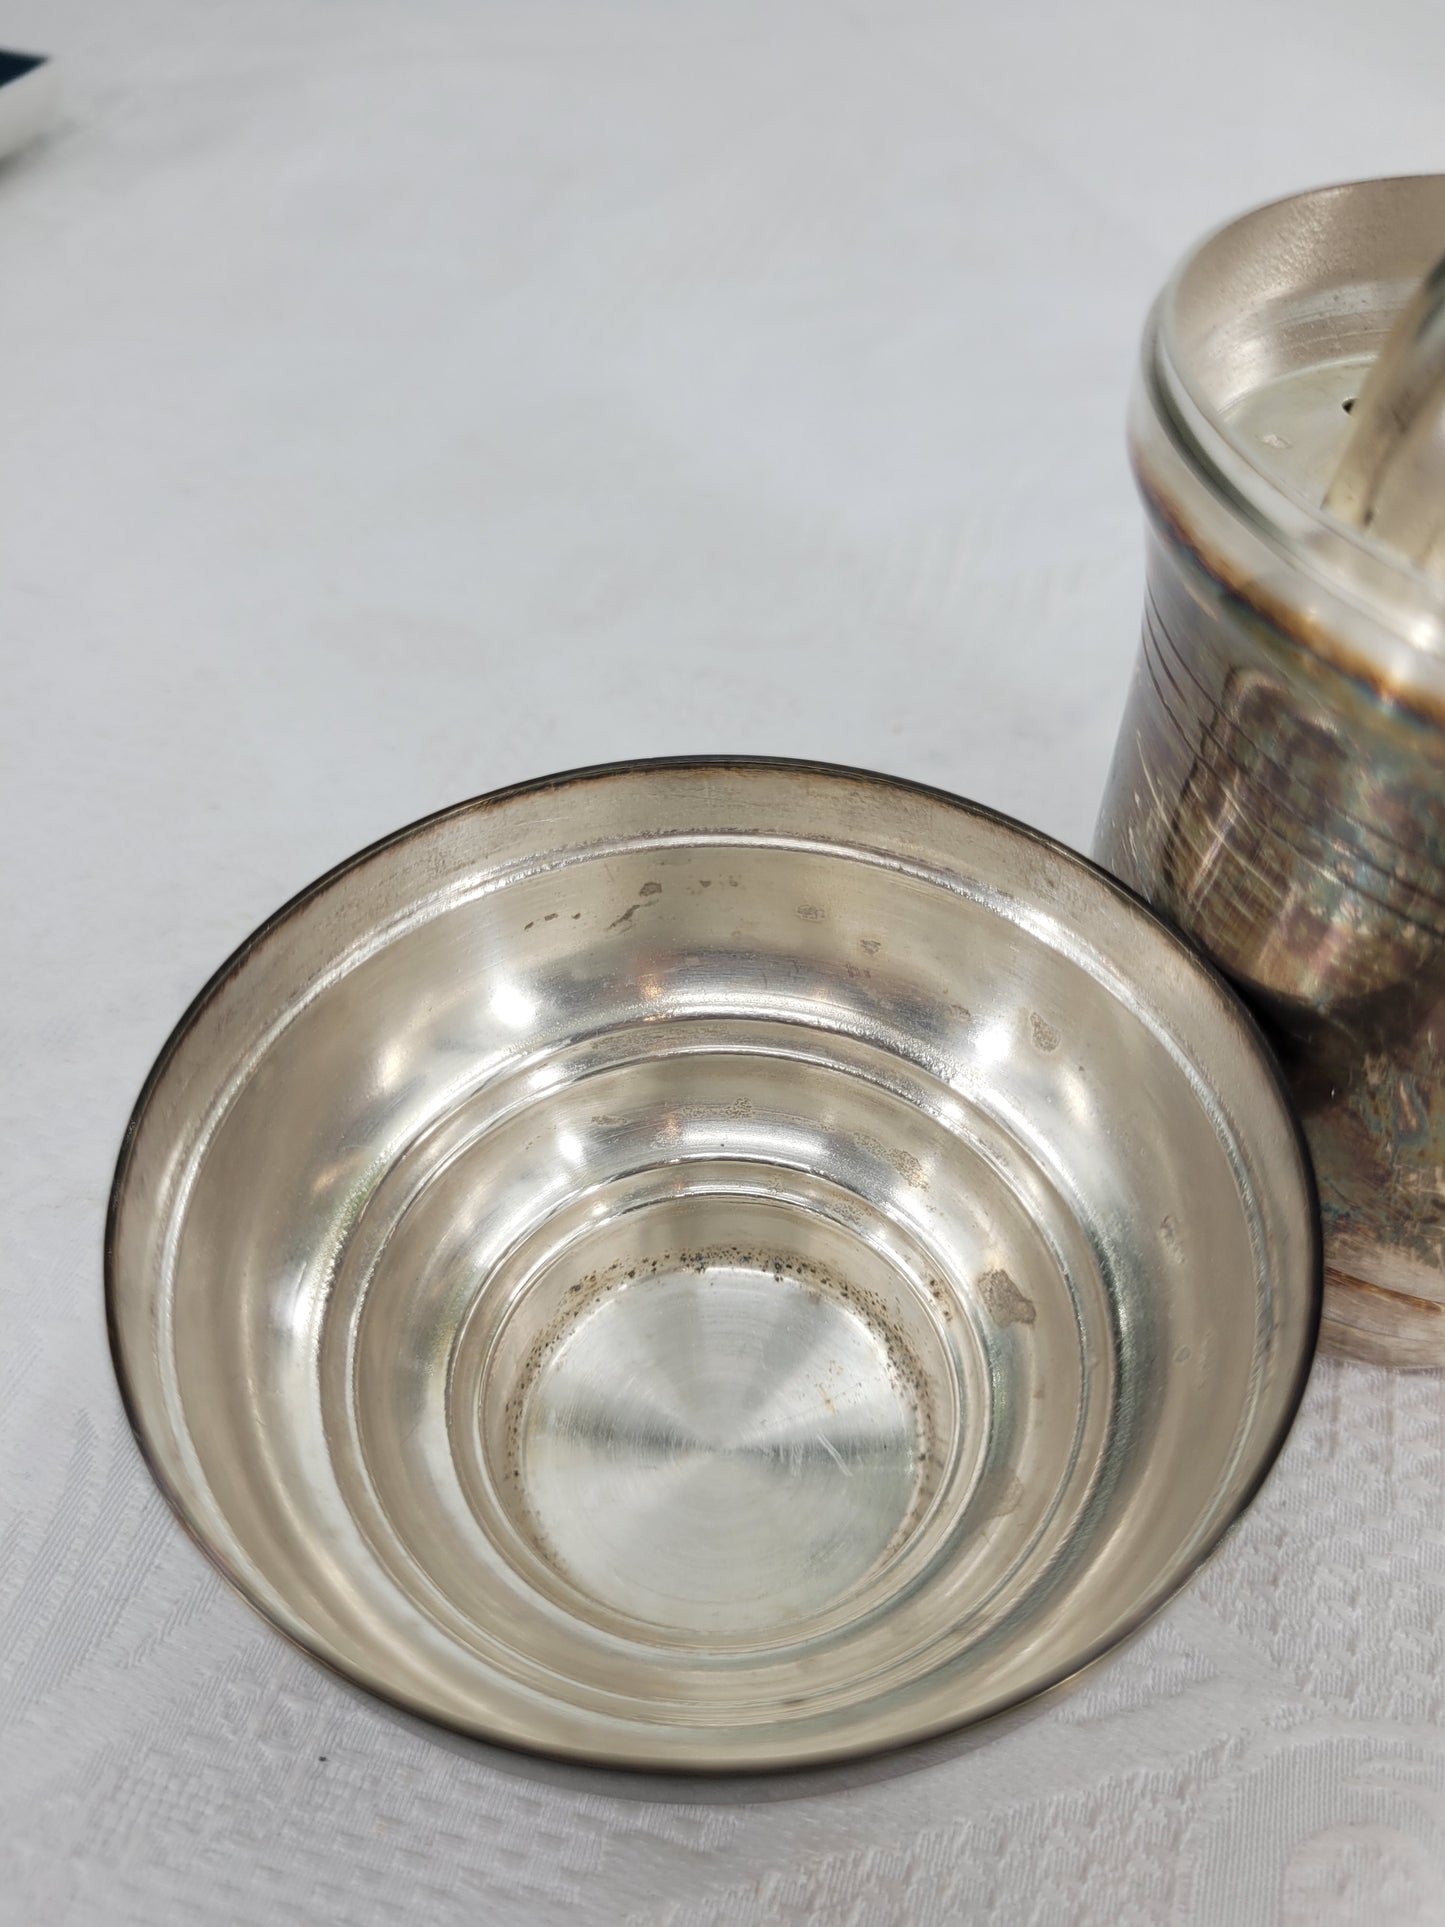 Französische Zitruspresse Cocktailshaker Versilbert Silver Plated